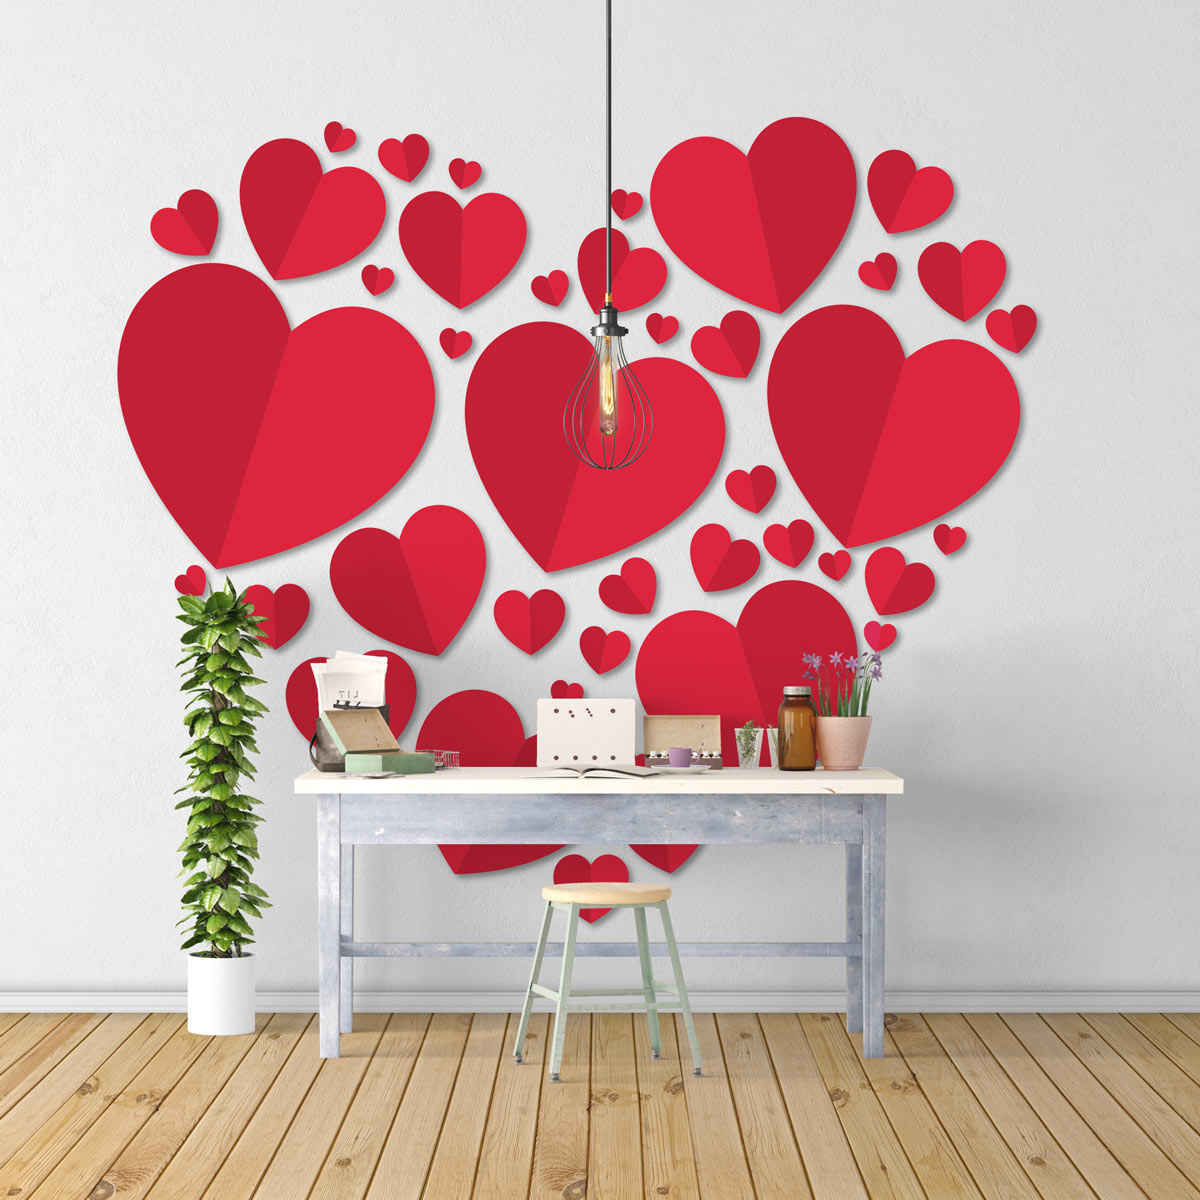 Stickers muraux design - Sticker de décoration murale coeur